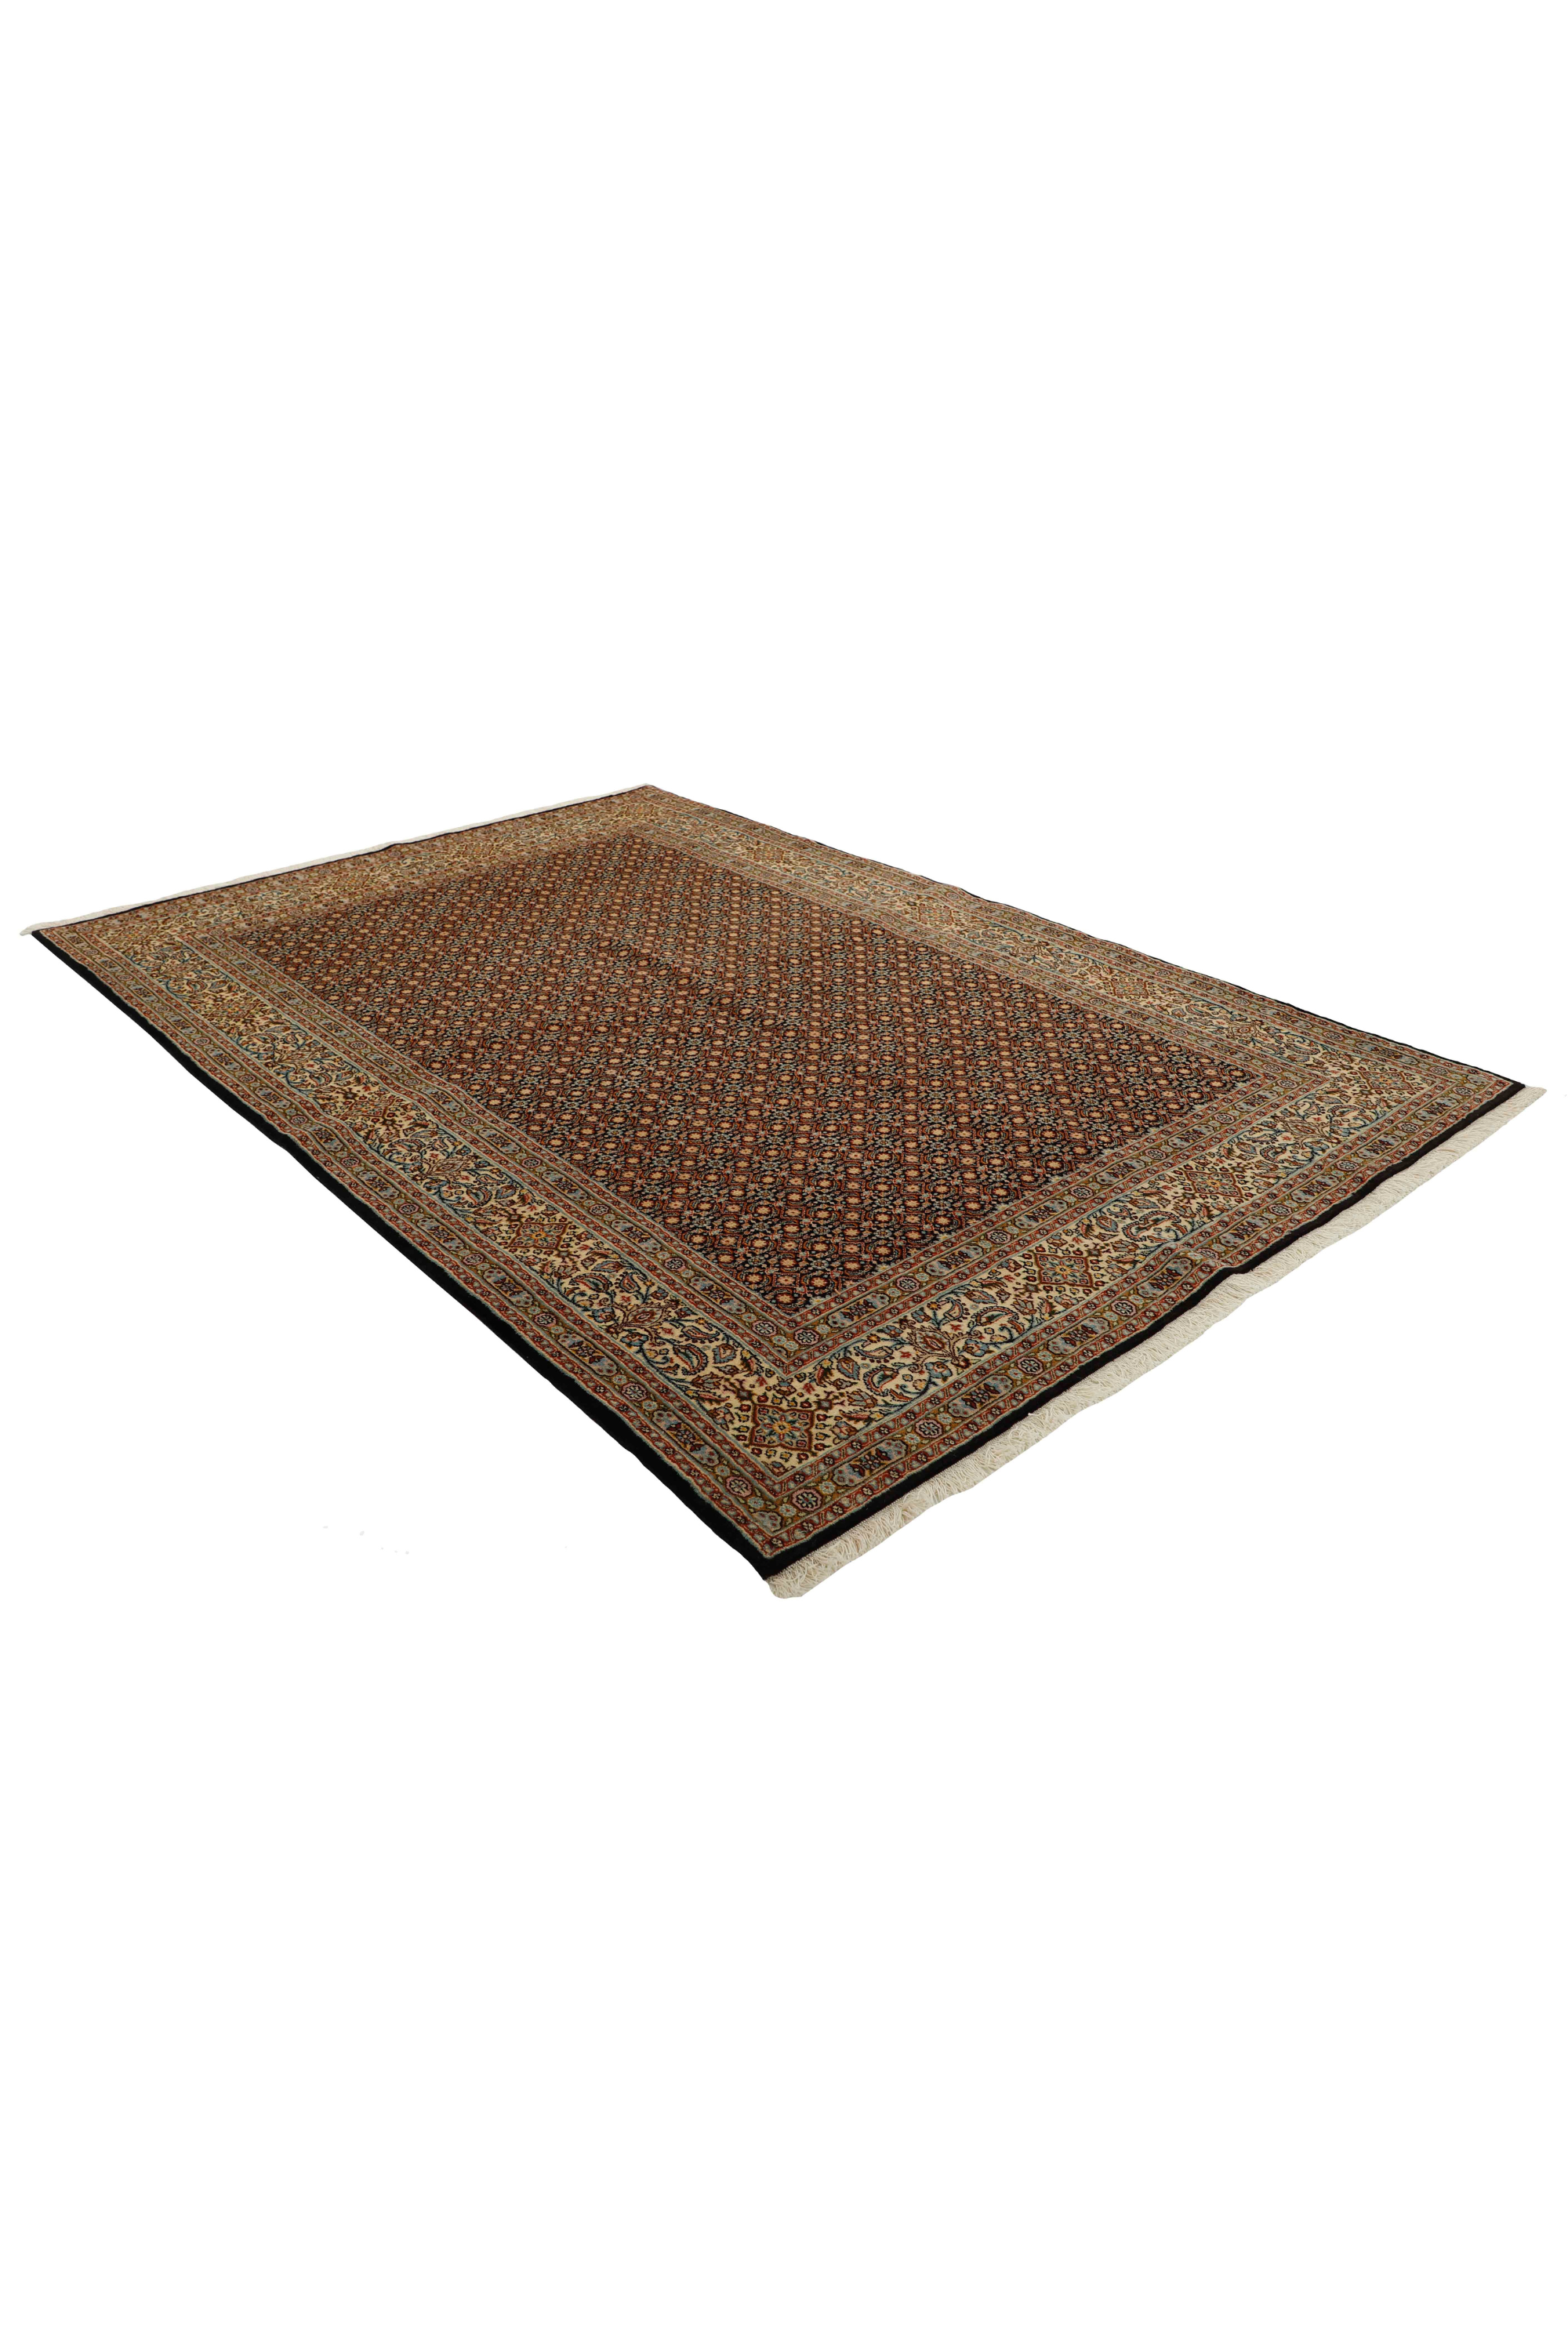 Traditional Bordered Moud Mahi rug